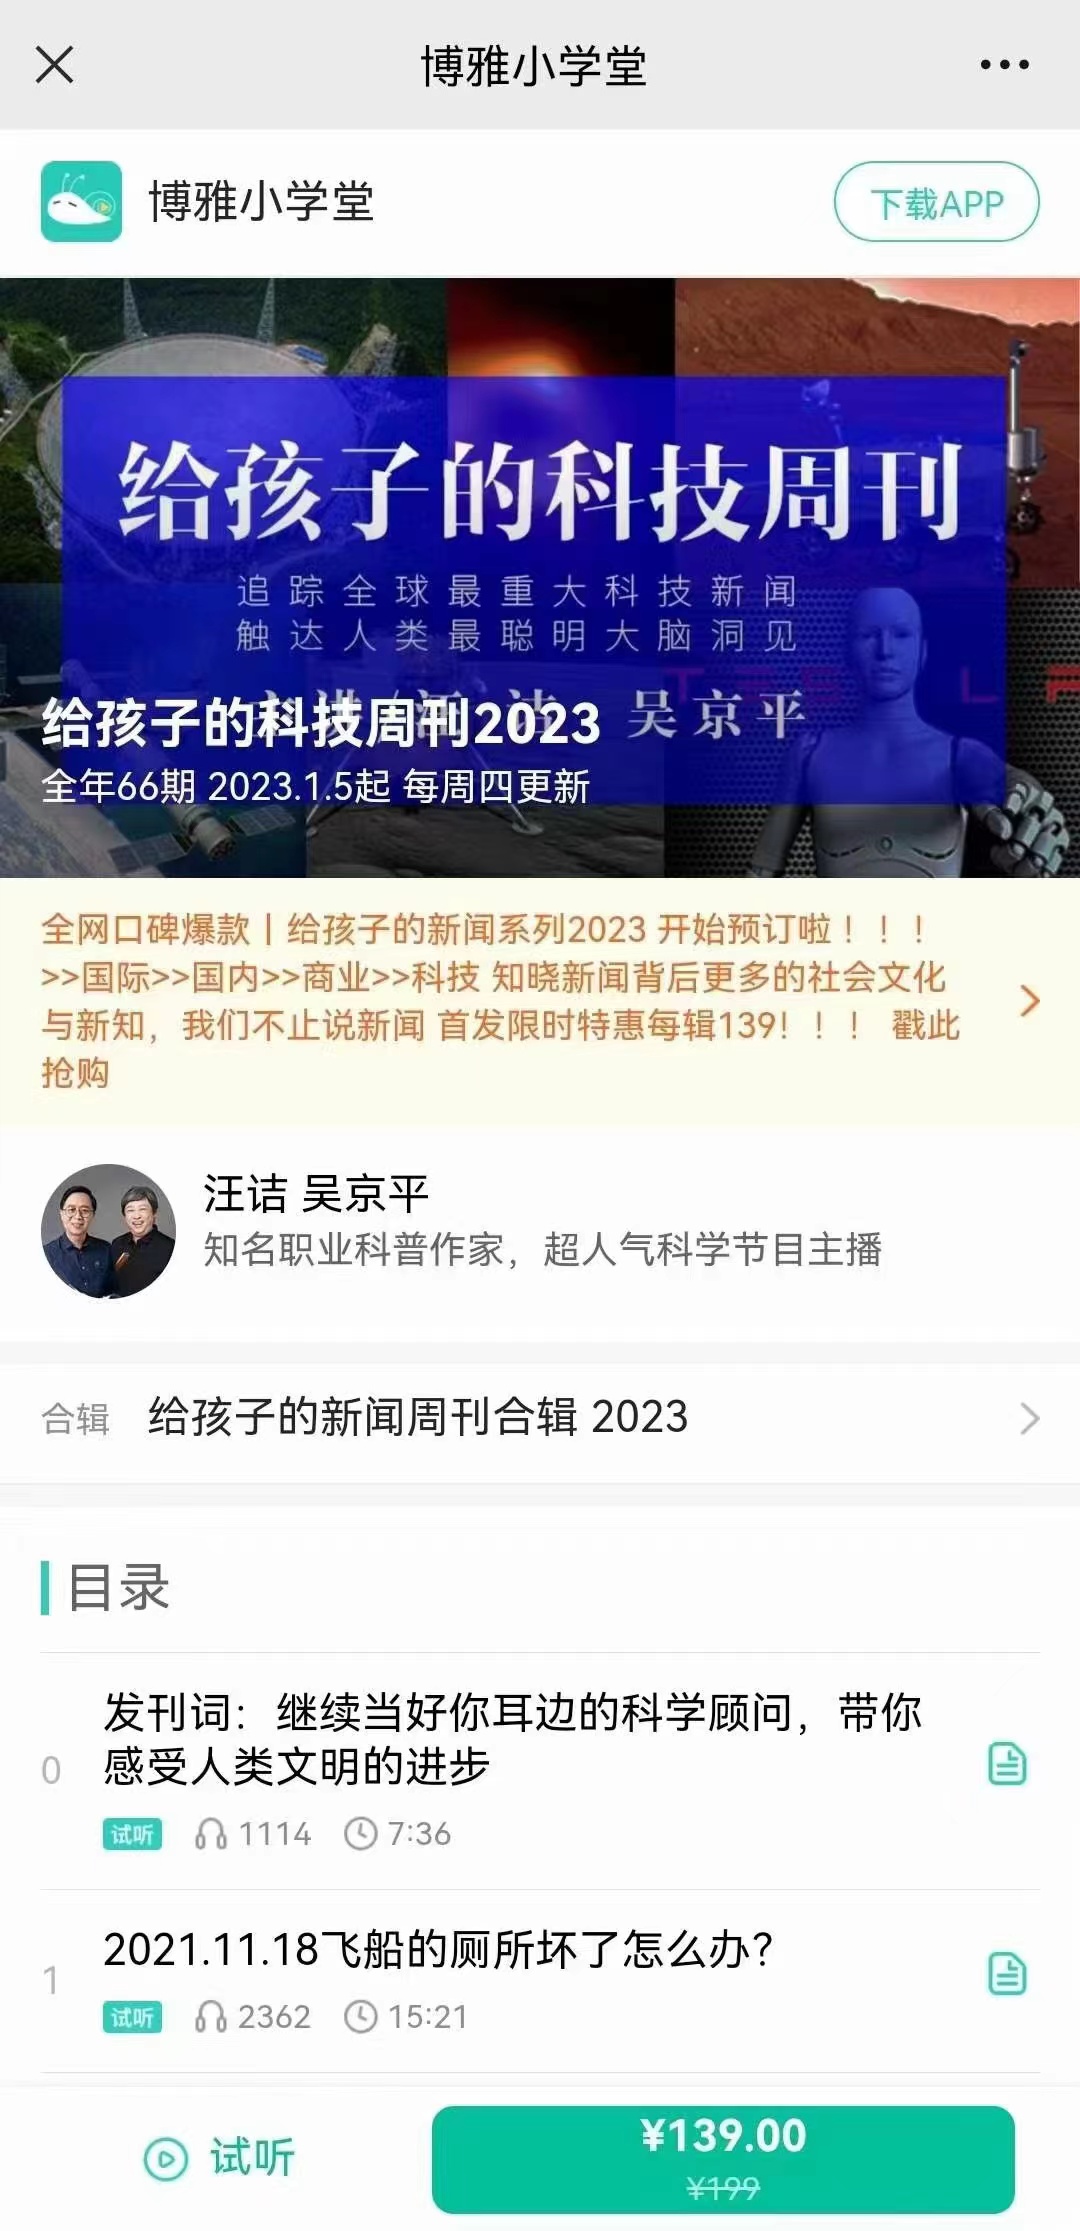 【热门更新】【博雅小学堂区】 《给孩子的科技周刊2023》 《给孩子的中国新闻2023》 《给孩子的国际新闻2023》 《给孩子的商业周刊2023》